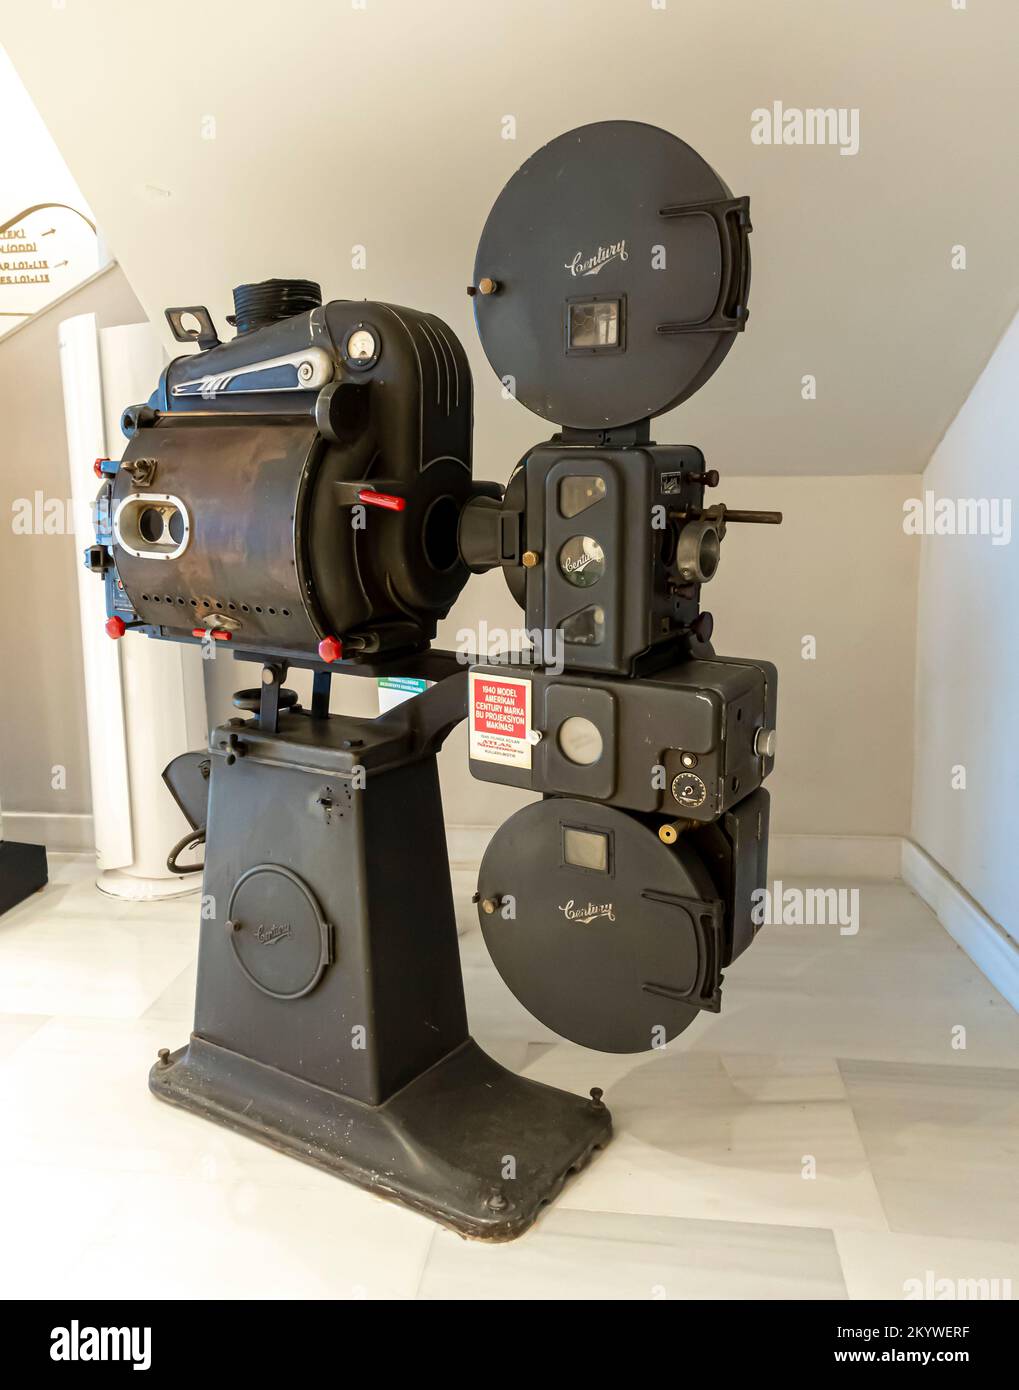 Ancien projecteur de film 35 mm vintage fabriqué en 1940 par siècle, les États-Unis. Exposé au musée du cinéma Atlas, Istanbul, Turquie Banque D'Images